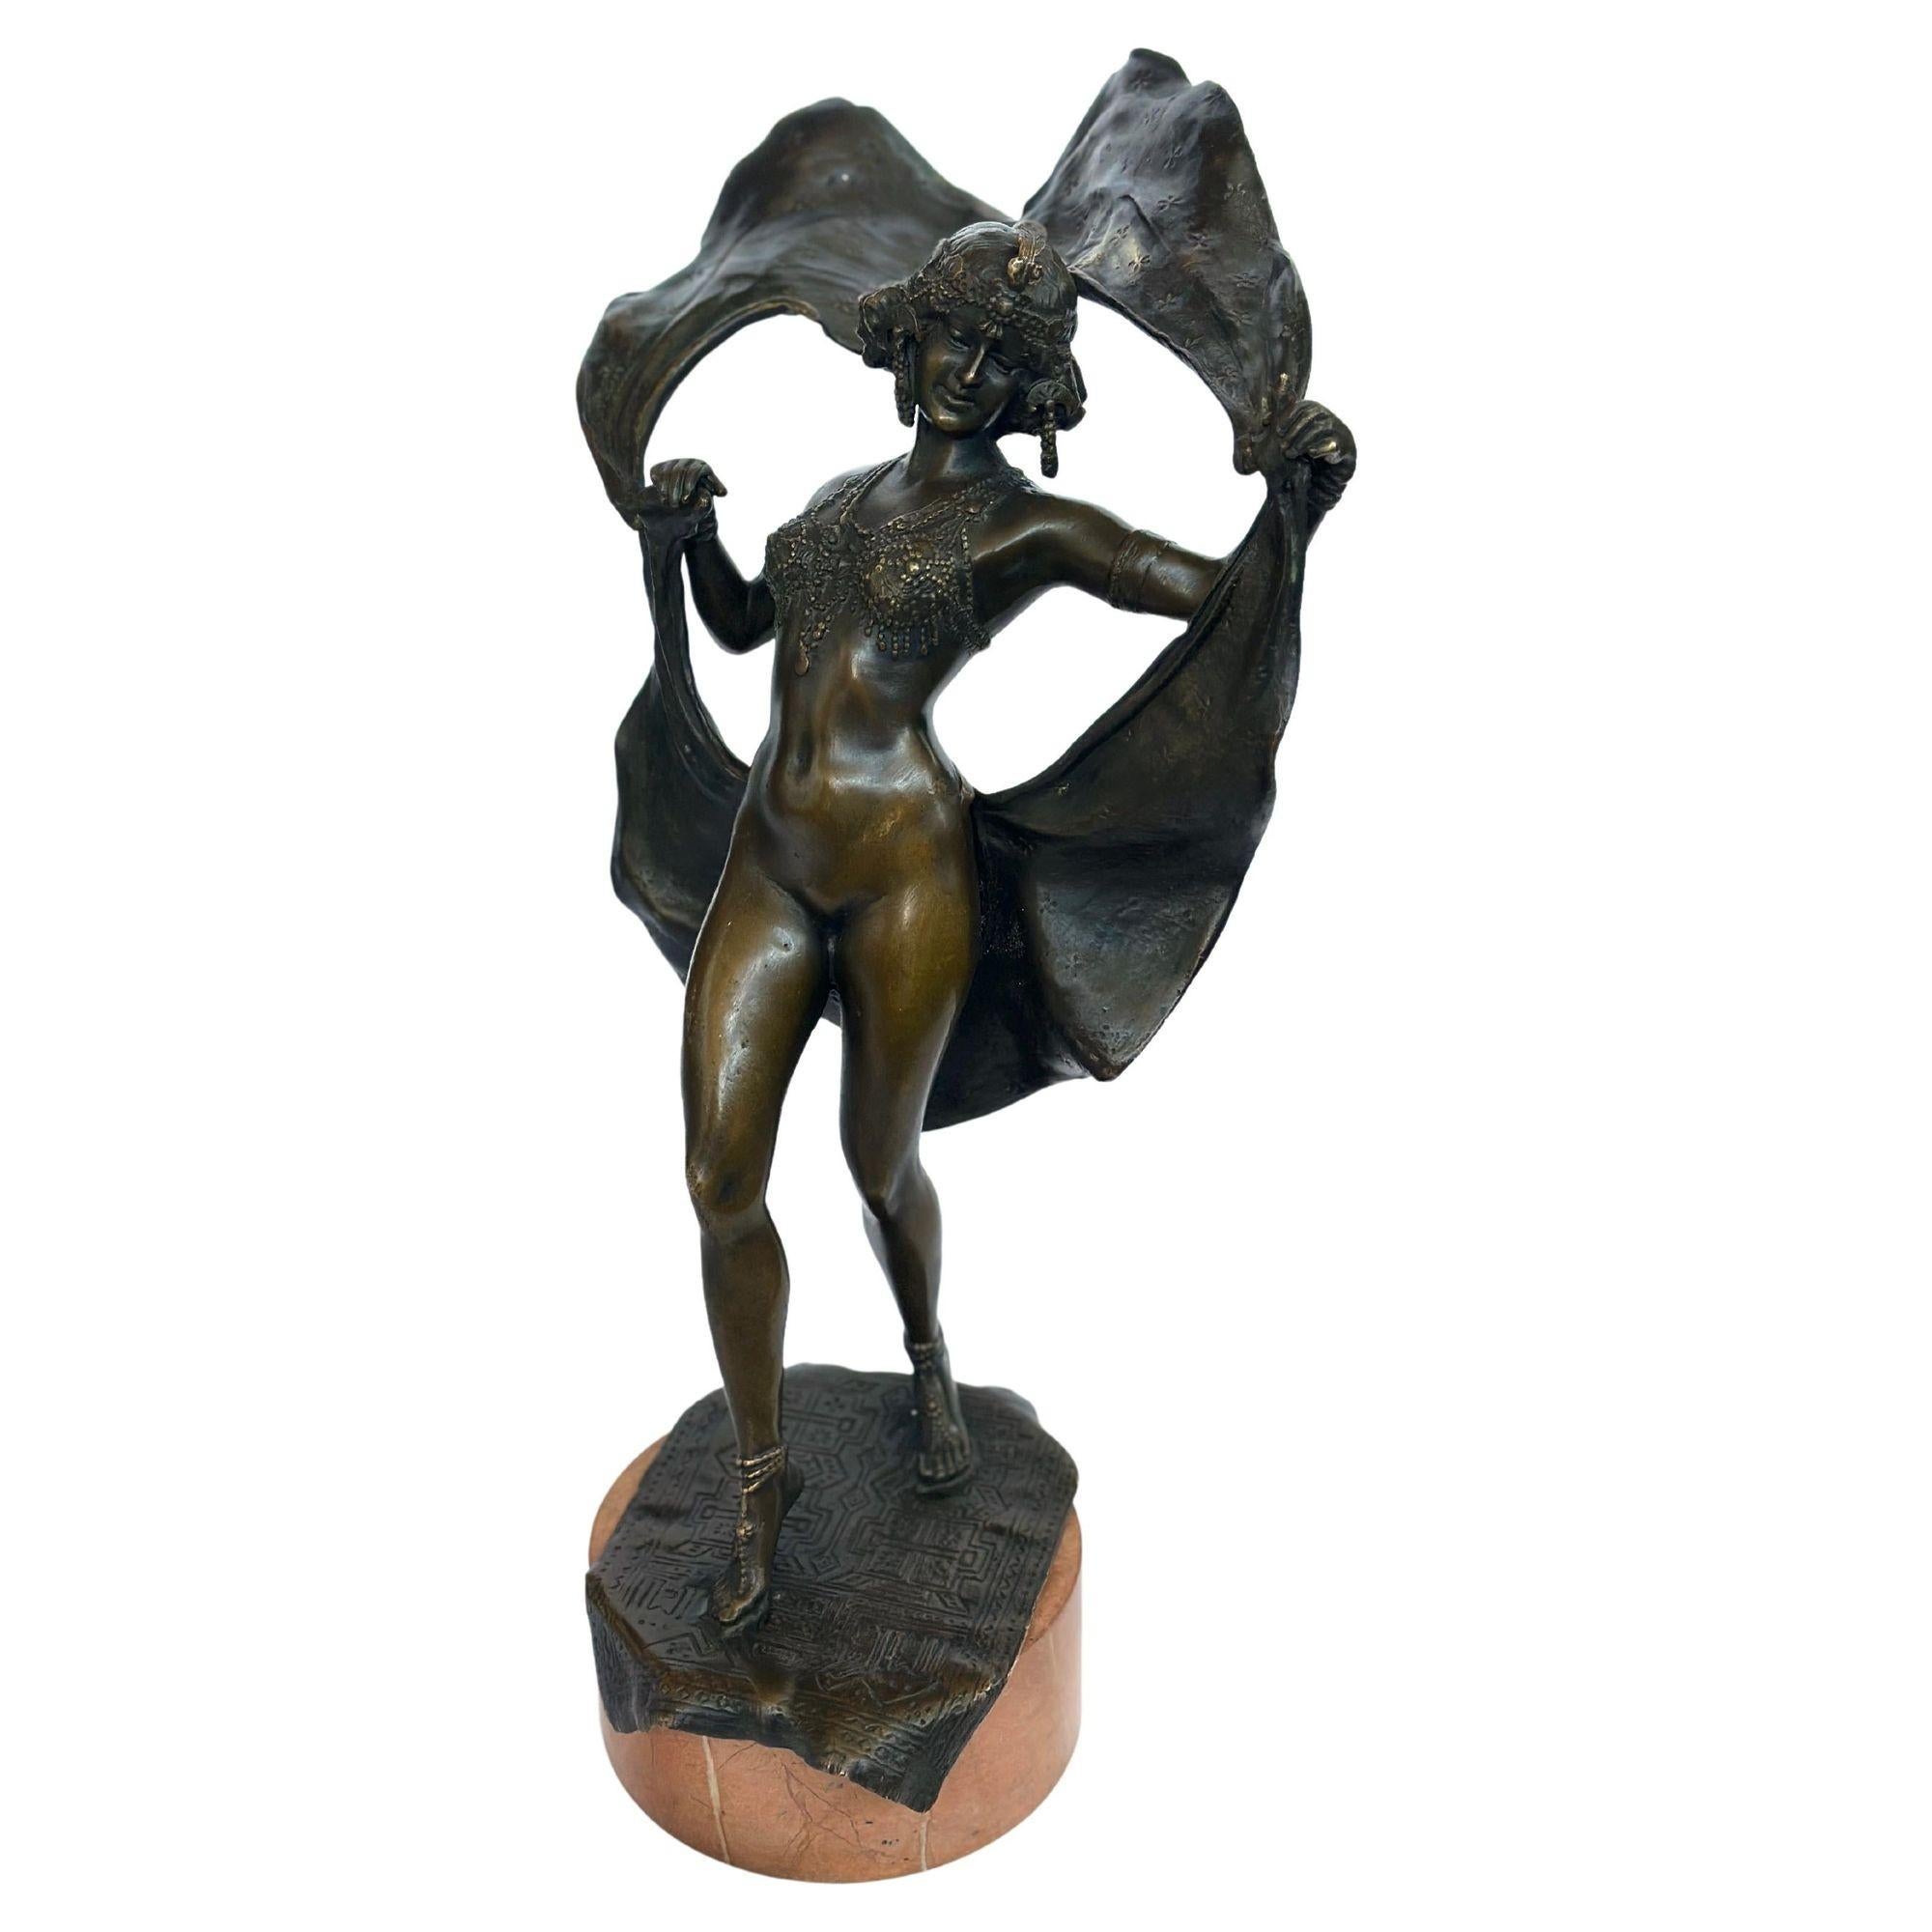 Rare sculpture viennoise en bronze de Franz Xaver Bergmann avec d'excellents détails représentant une jeune danseuse exotique faisant tournoyer sa jupe articulée pour se soulever et révéler son corps nu, debout sur une base en pierre. Faible